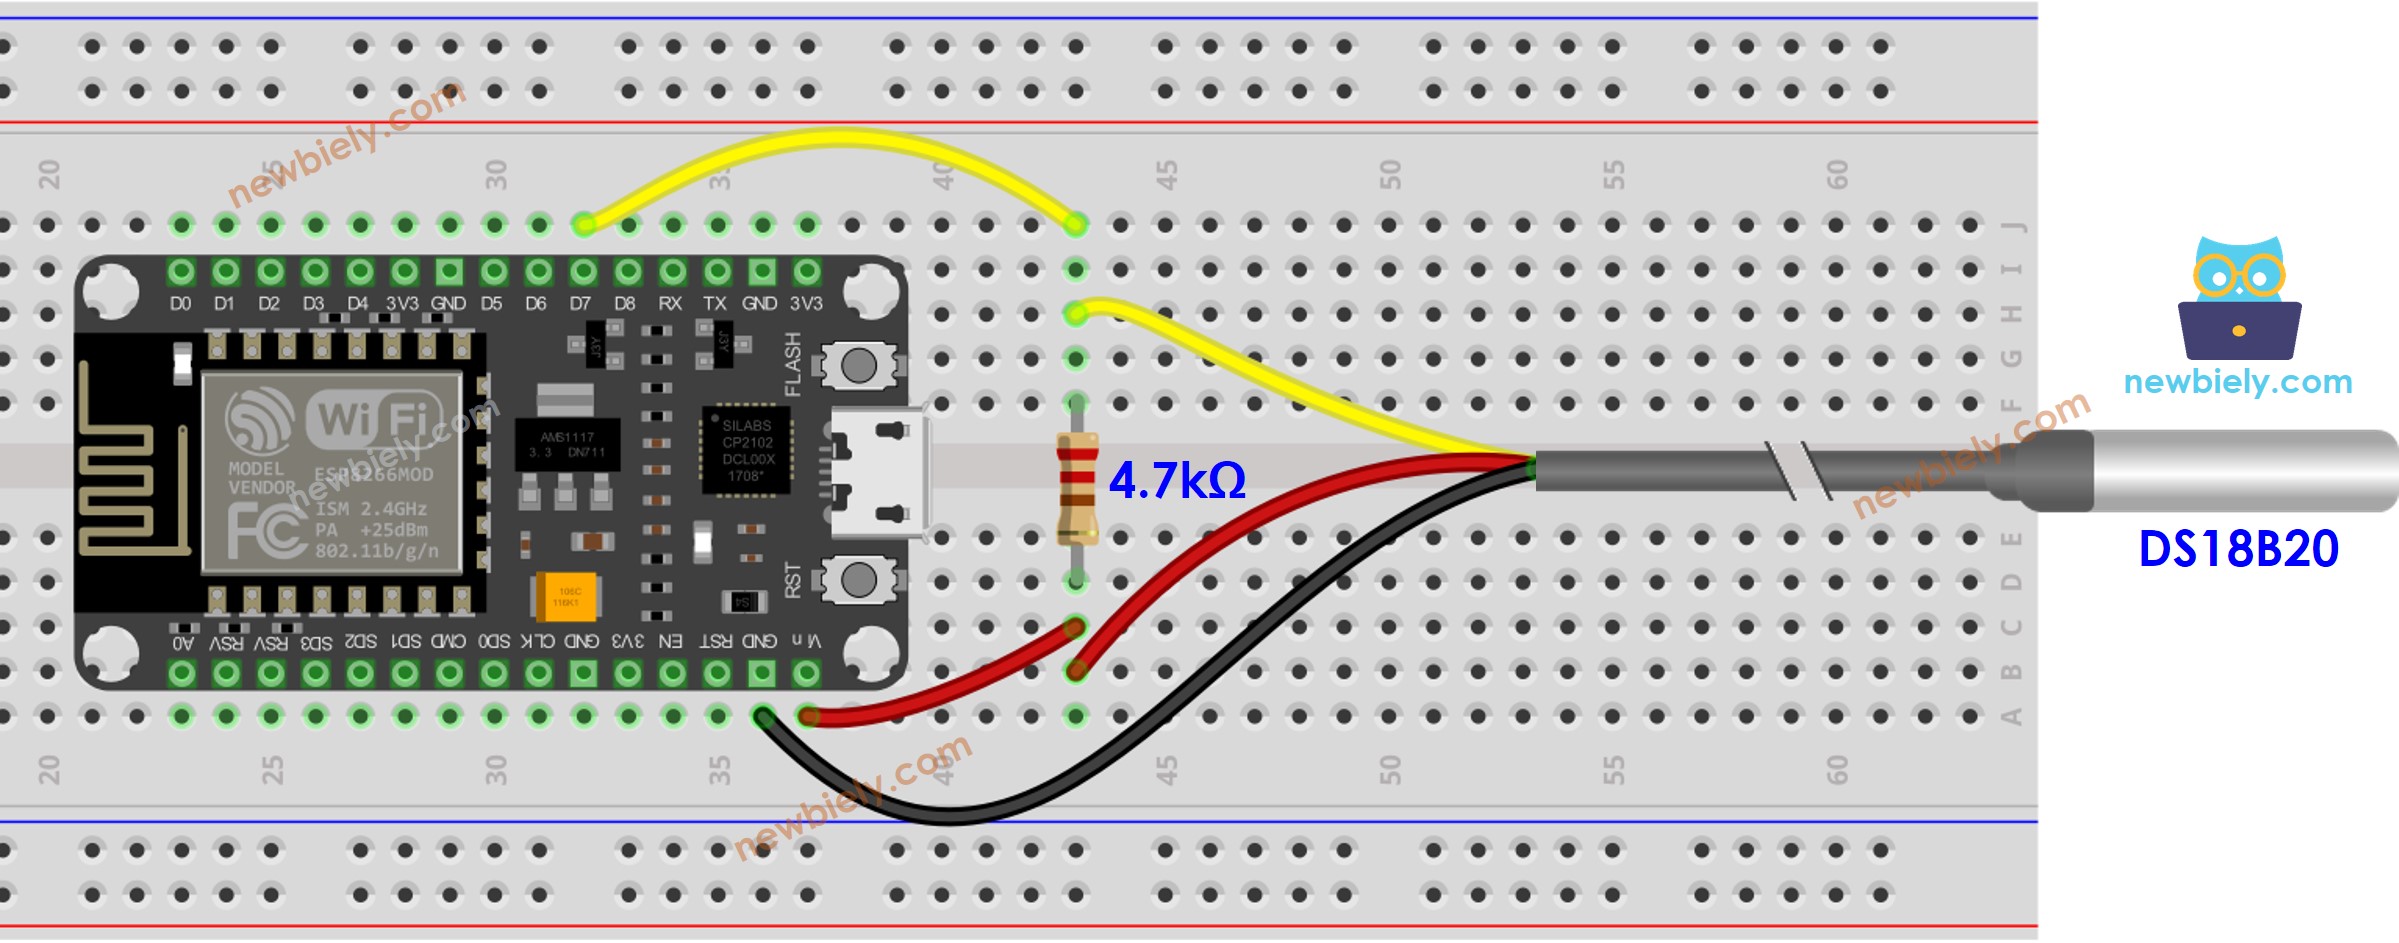 The wiring diagram between ESP8266 NodeMCU and temperature sensor